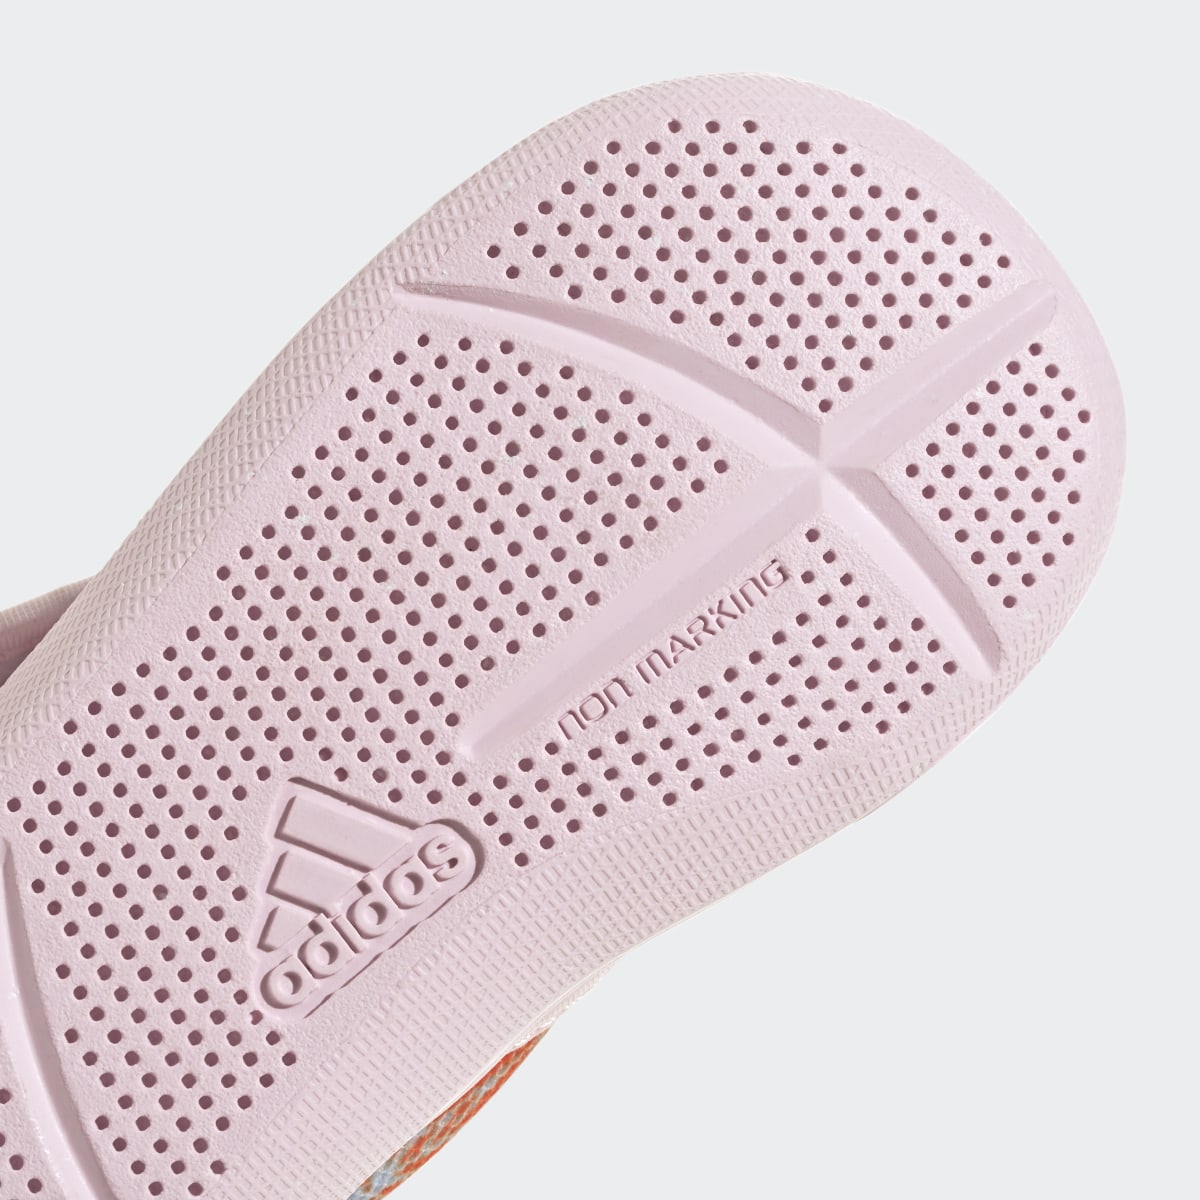 Adidas x Disney AltaVenture 2.0 Moana Sandalet. 10